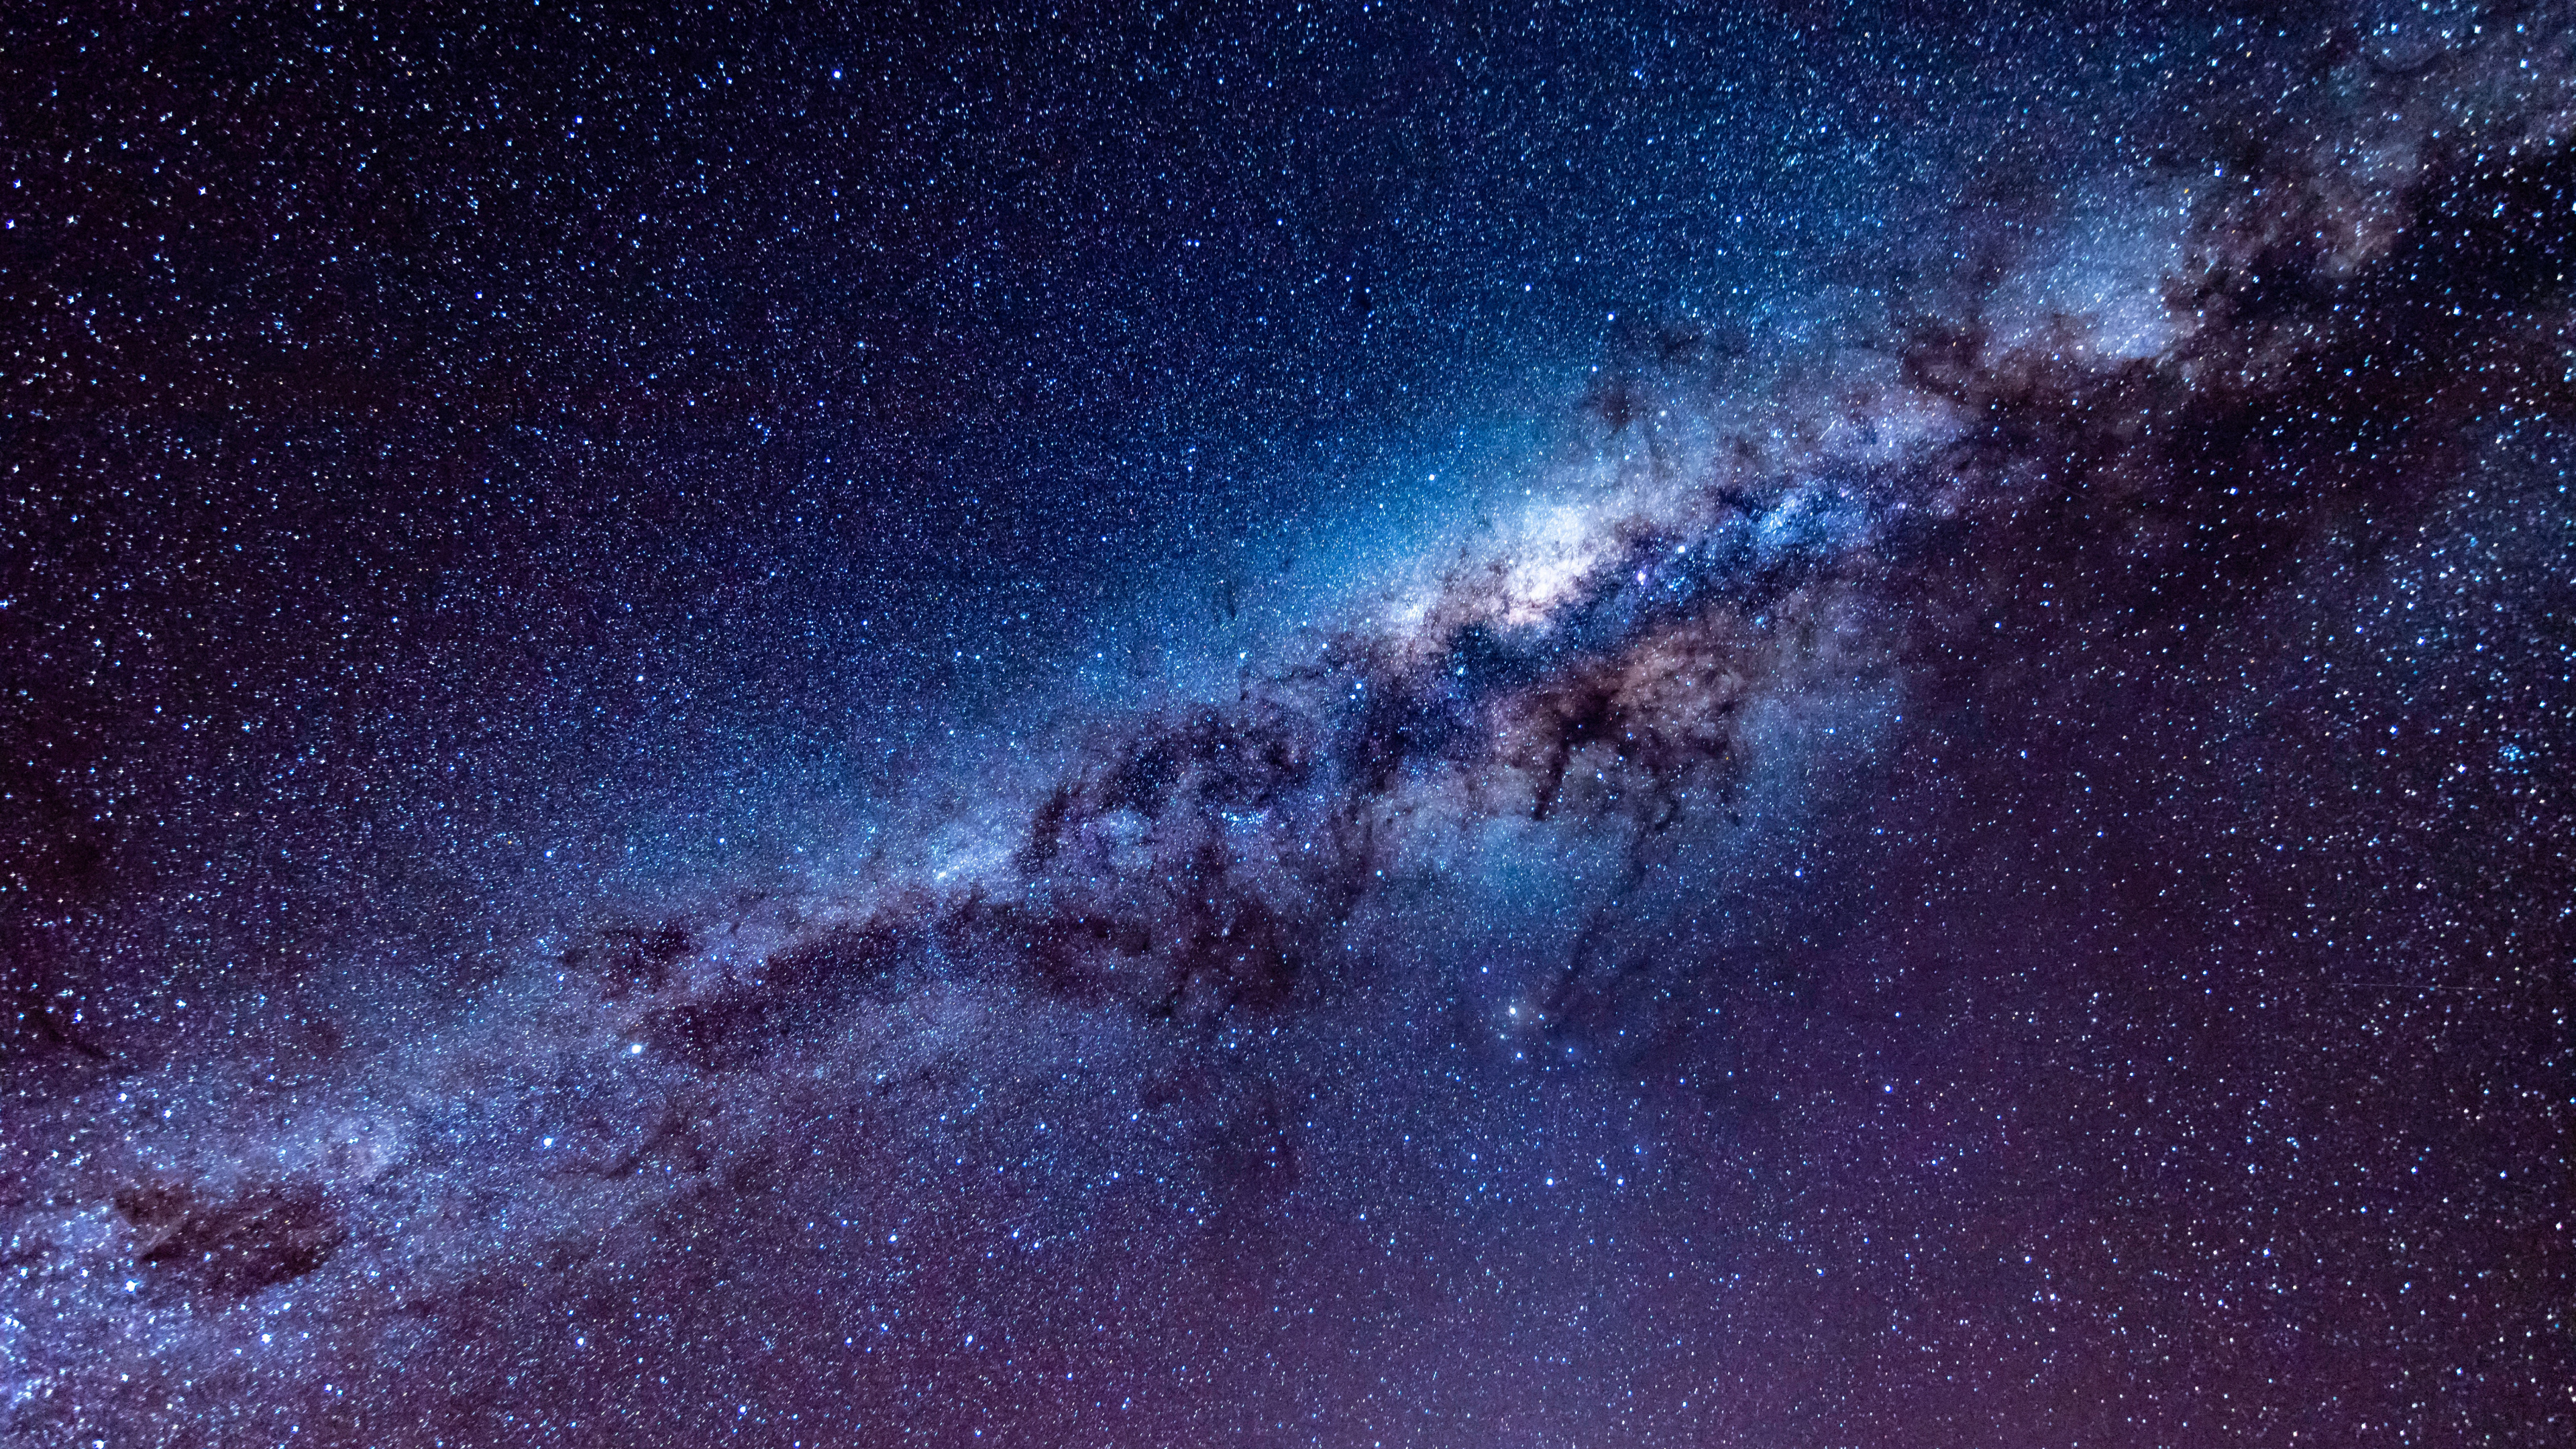 银河系, 天文学, 宇宙, 明星, 夜晚的天空 壁纸 3840x2160 允许